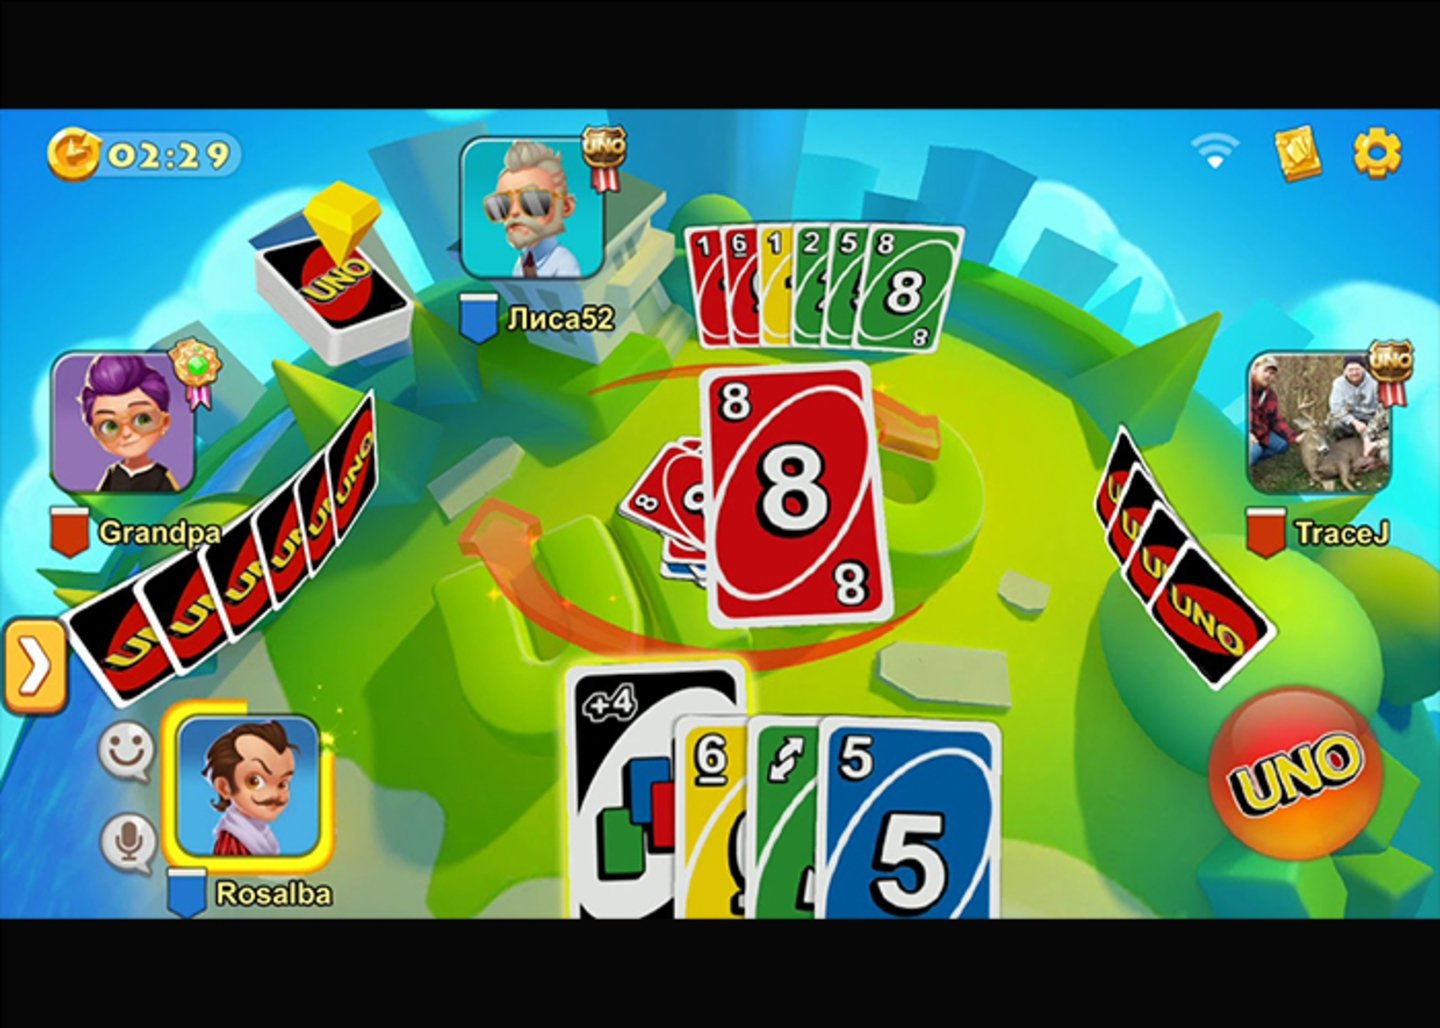 UNO!: juega al clásico juego de cartas UNO con amigos y familia